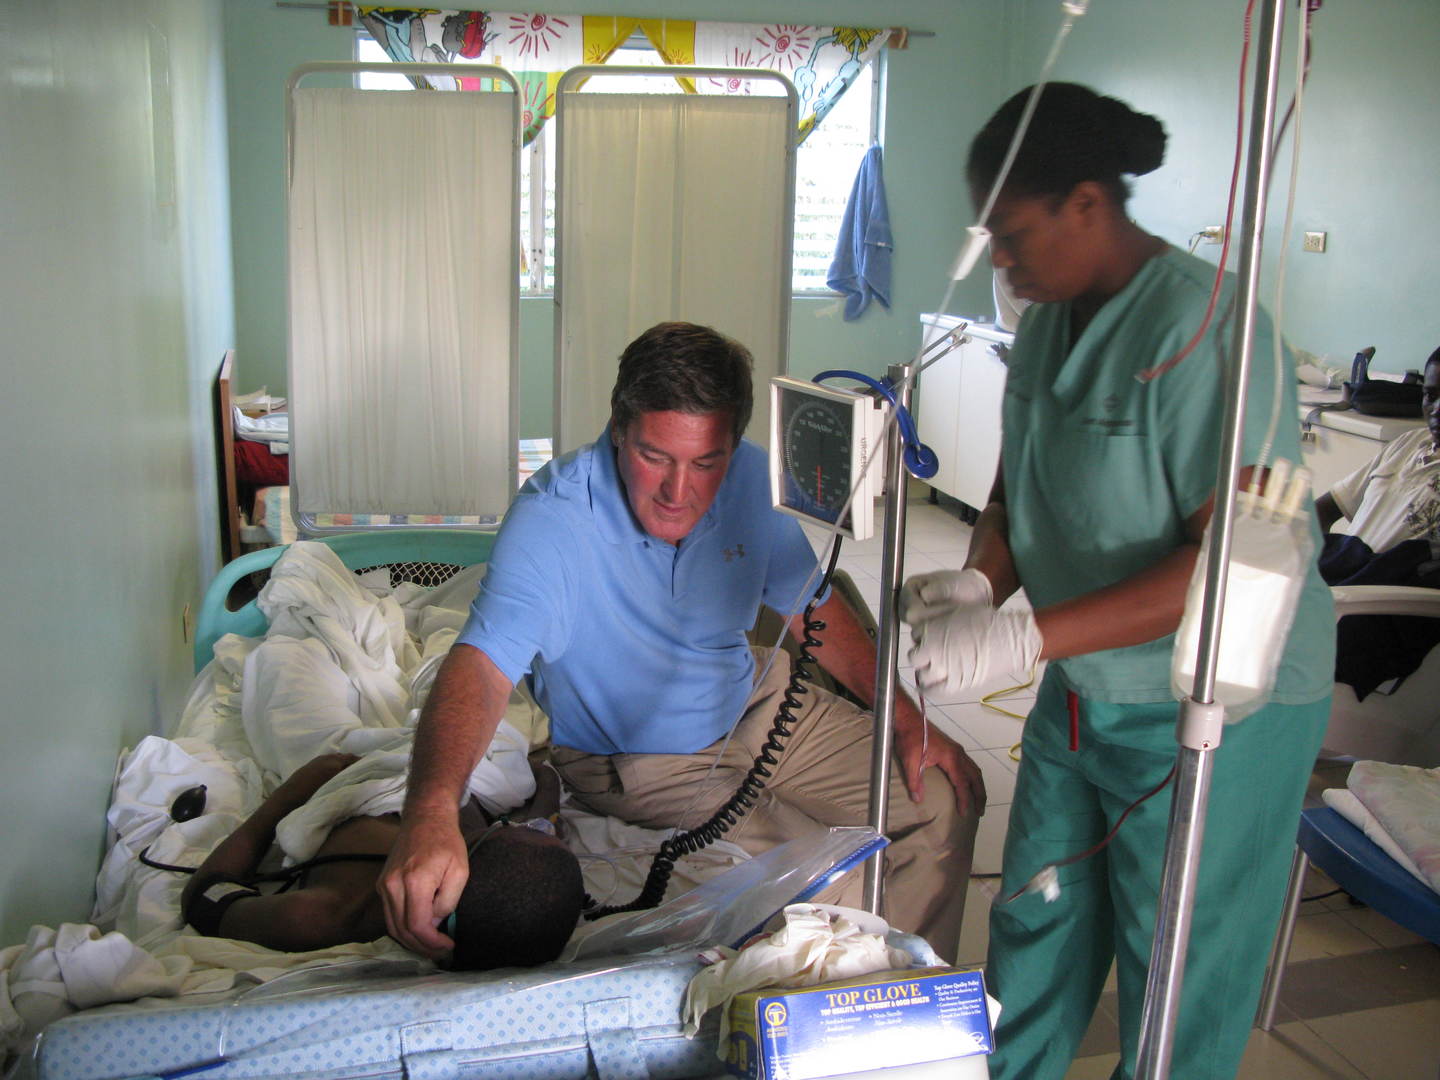 Padre Rick si trova ad affrontare una nuova emergenza in Haiti: aiutiamolo a raccogliere fondi per attrezzare e aprire al più presto un nuovo presidio medico per offrire assistenza